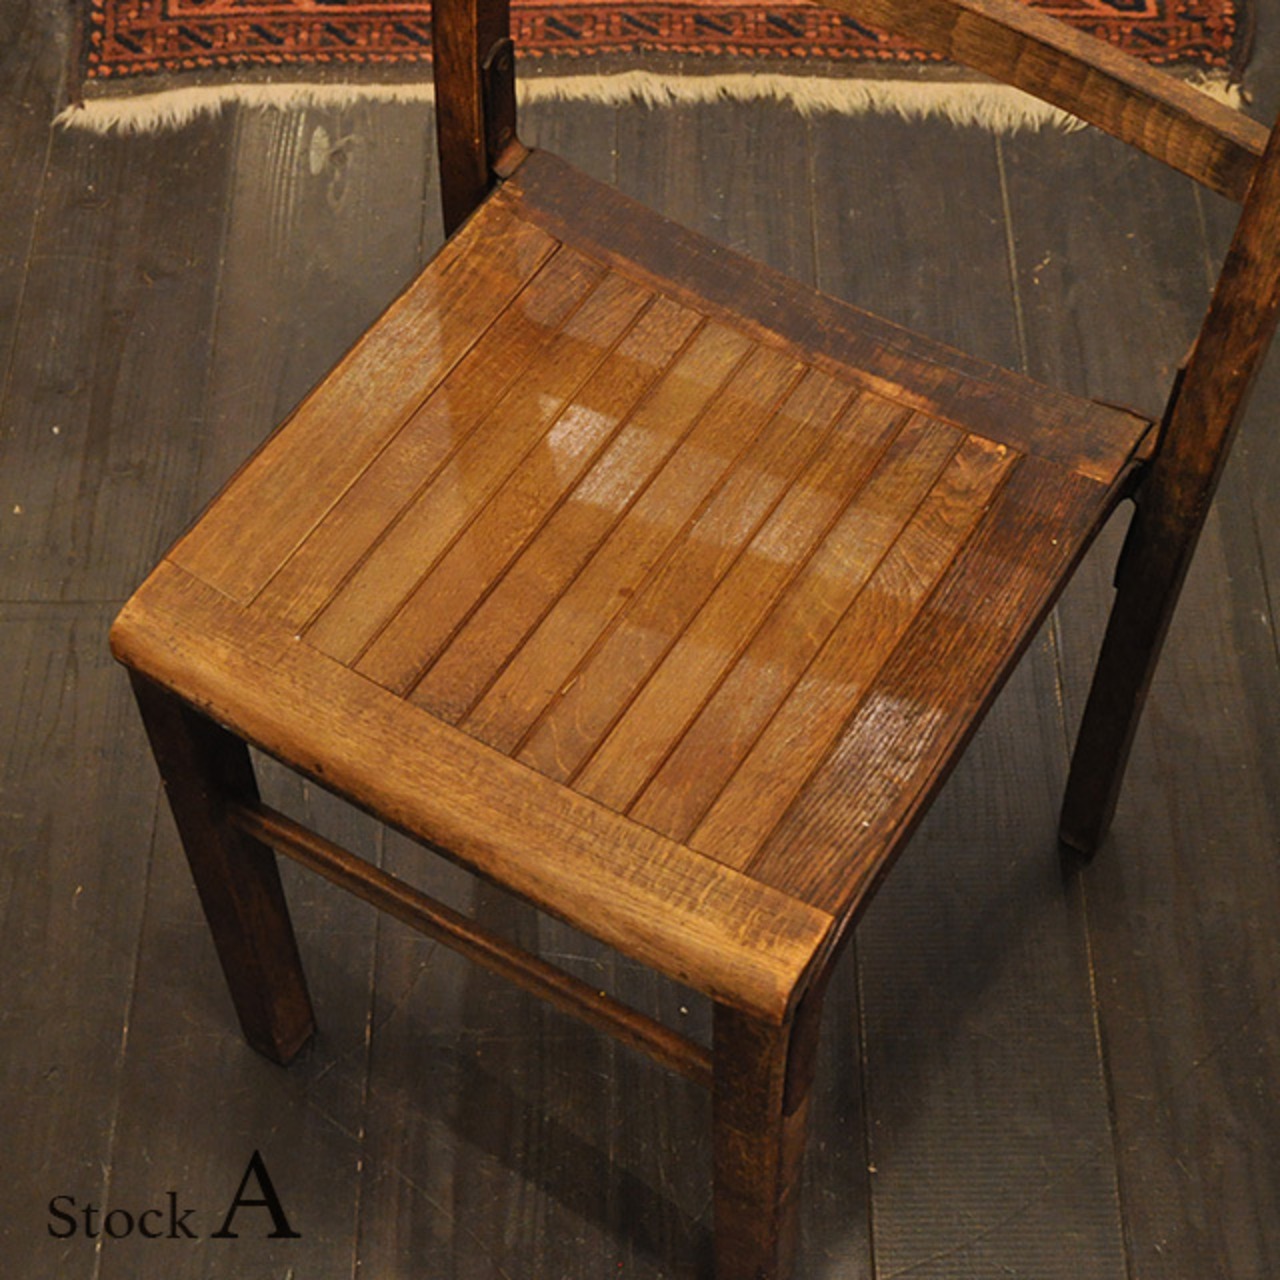 School Chair 【A】/ スクール チェア / 1911-0127a